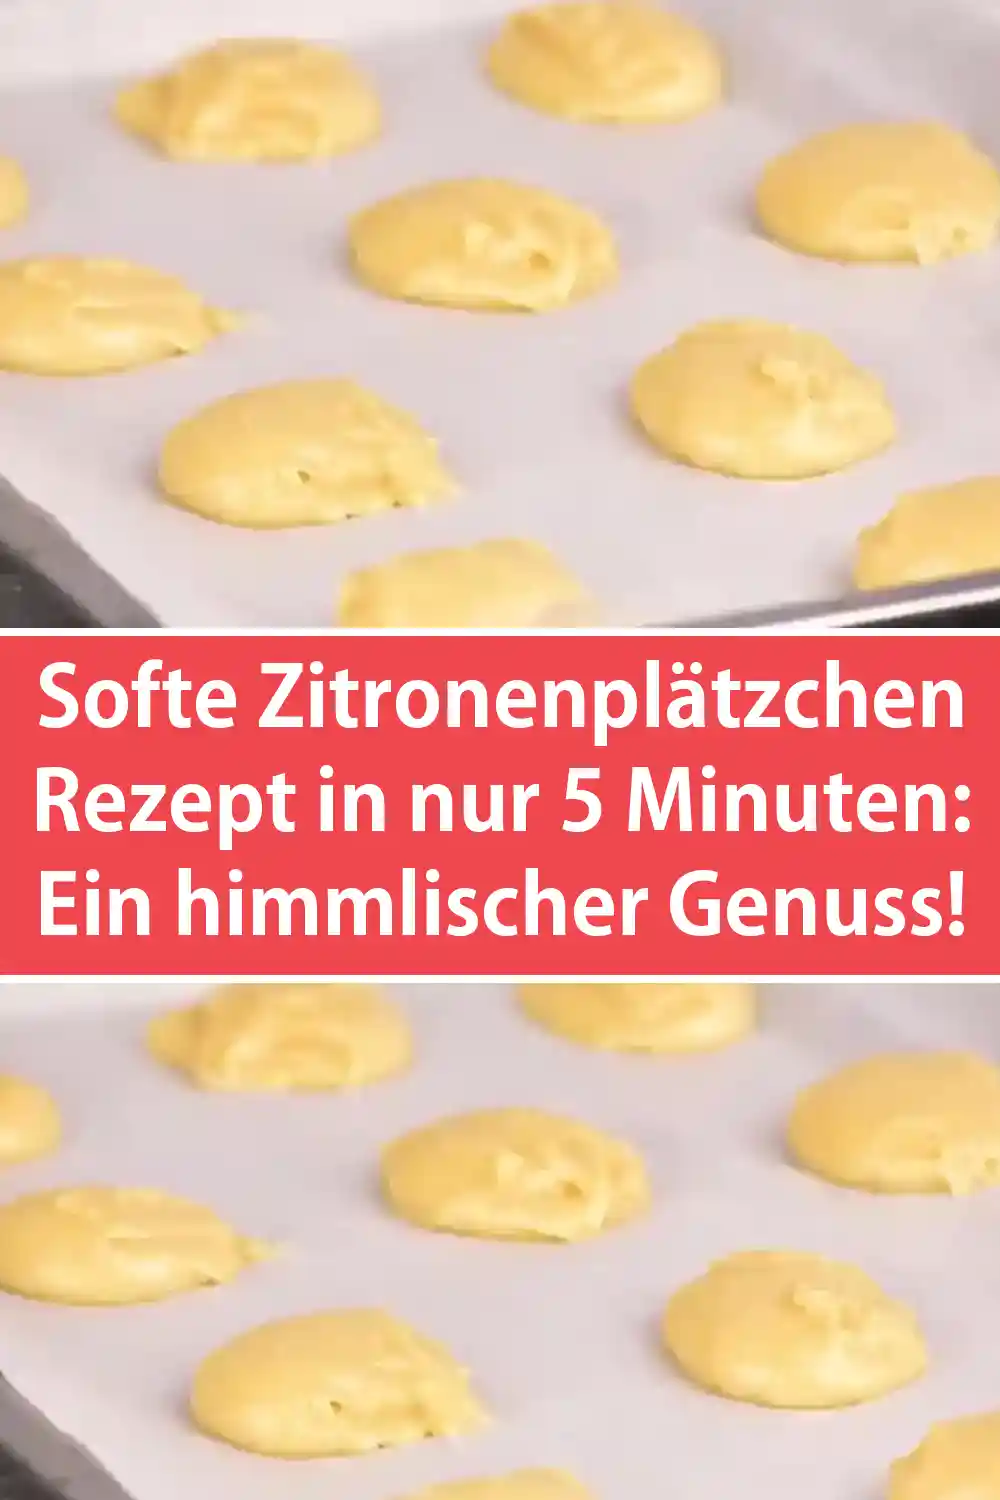 Softe Zitronenplätzchen Rezept in nur 5 Minuten: Ein himmlischer Genuss!